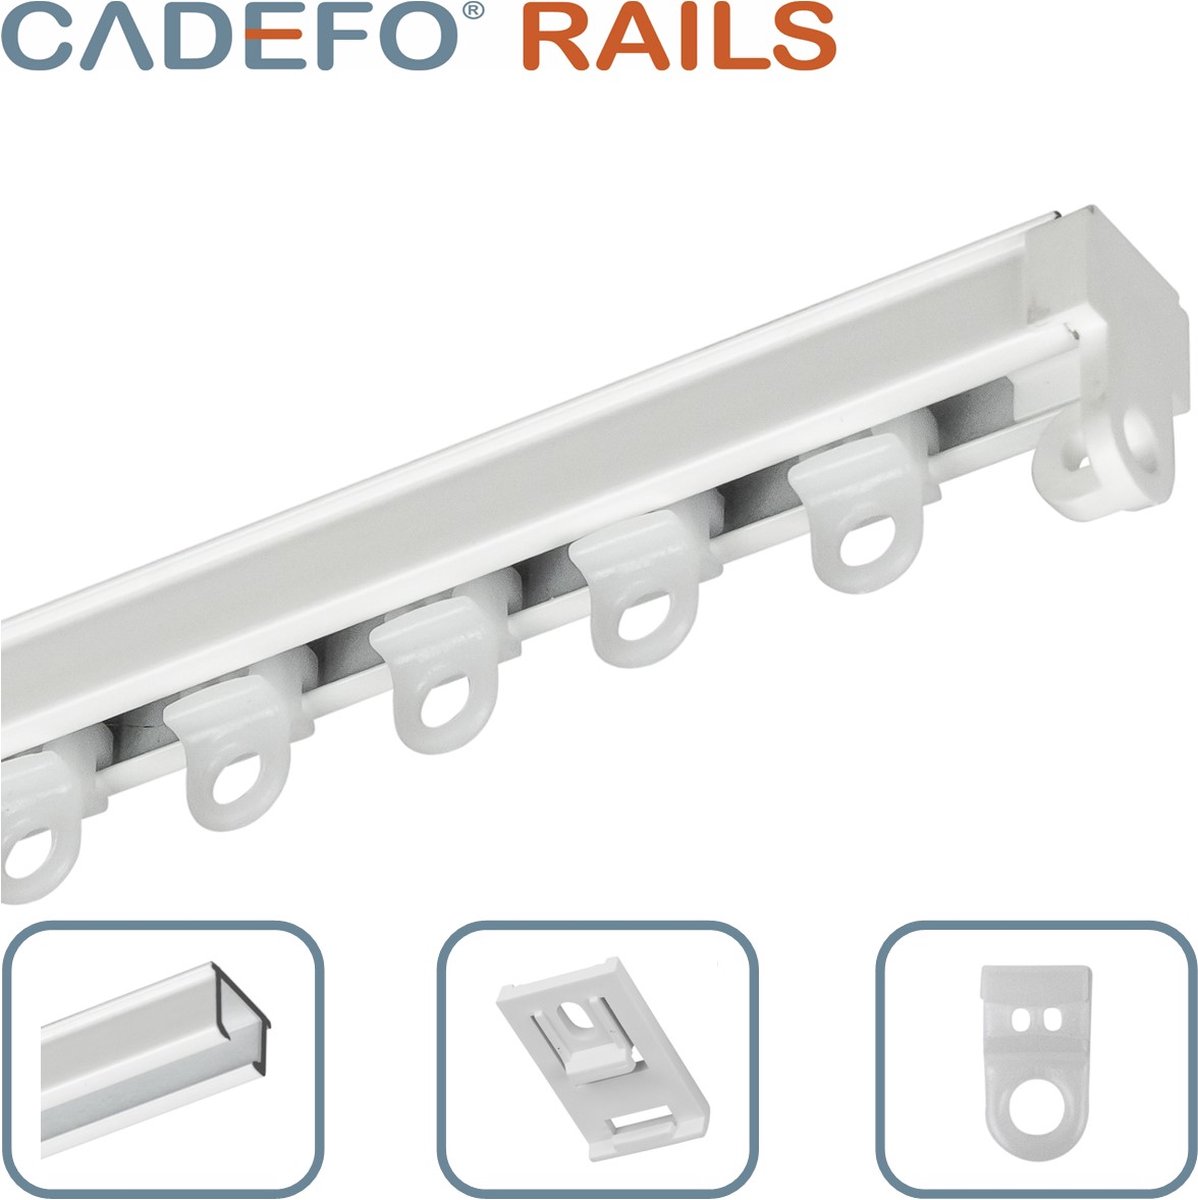 CADEFO RAILS (080 - 100 cm) Gordijnrails - Compleet op maat! - UIT 1 STUK - Leverbaar tot 6 meter - Plafondbevestiging - Lengte 88 cm